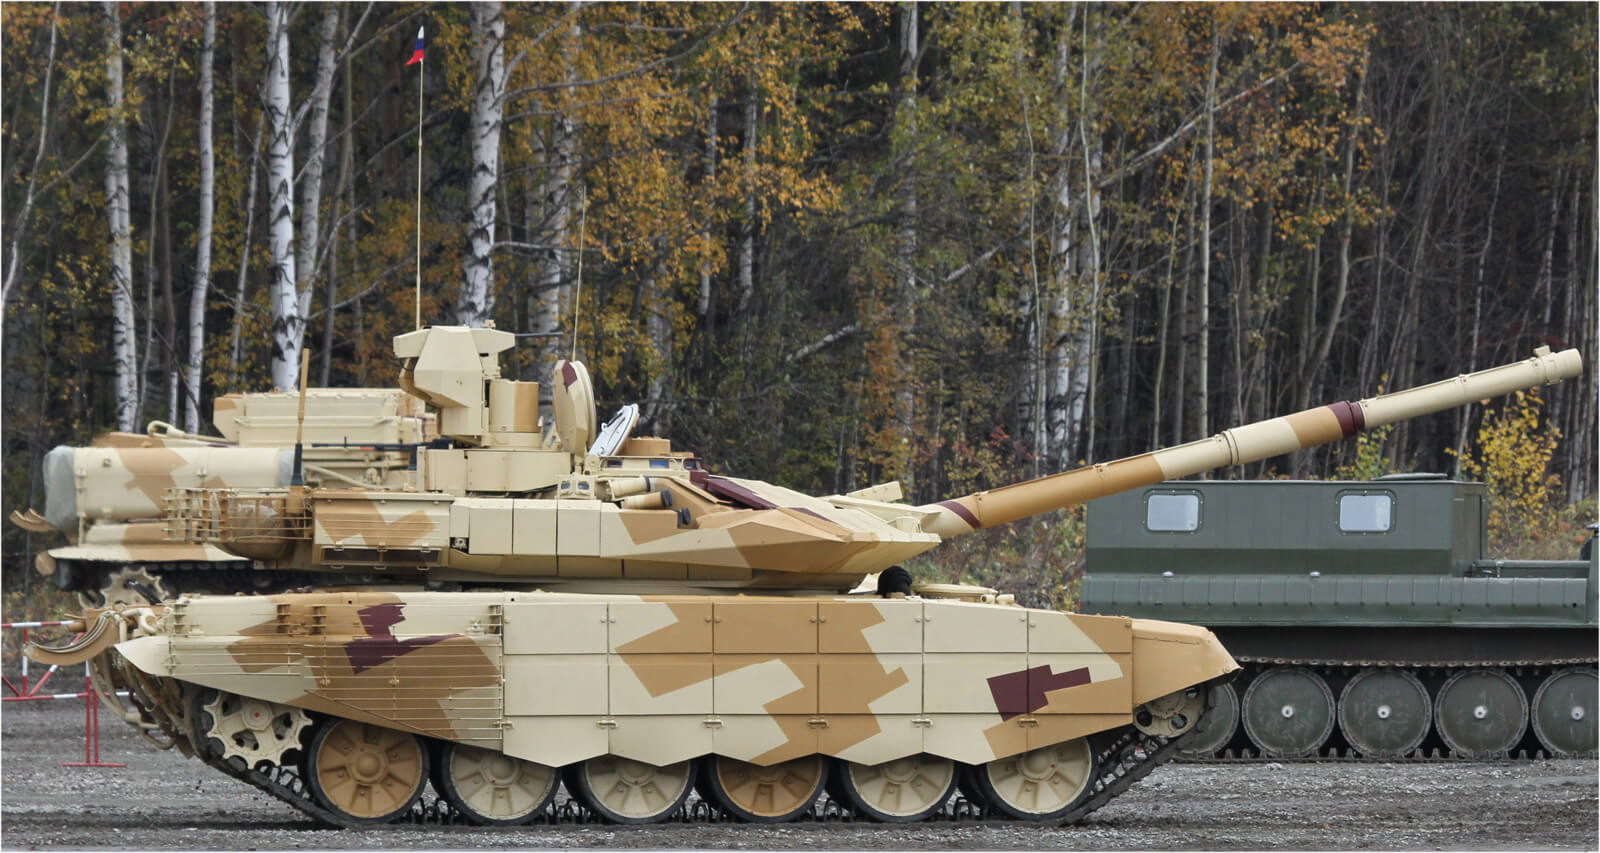 Russland zeigt der erste Tank, gedruckt auf einem 3D-Drucker. In Echtzeit